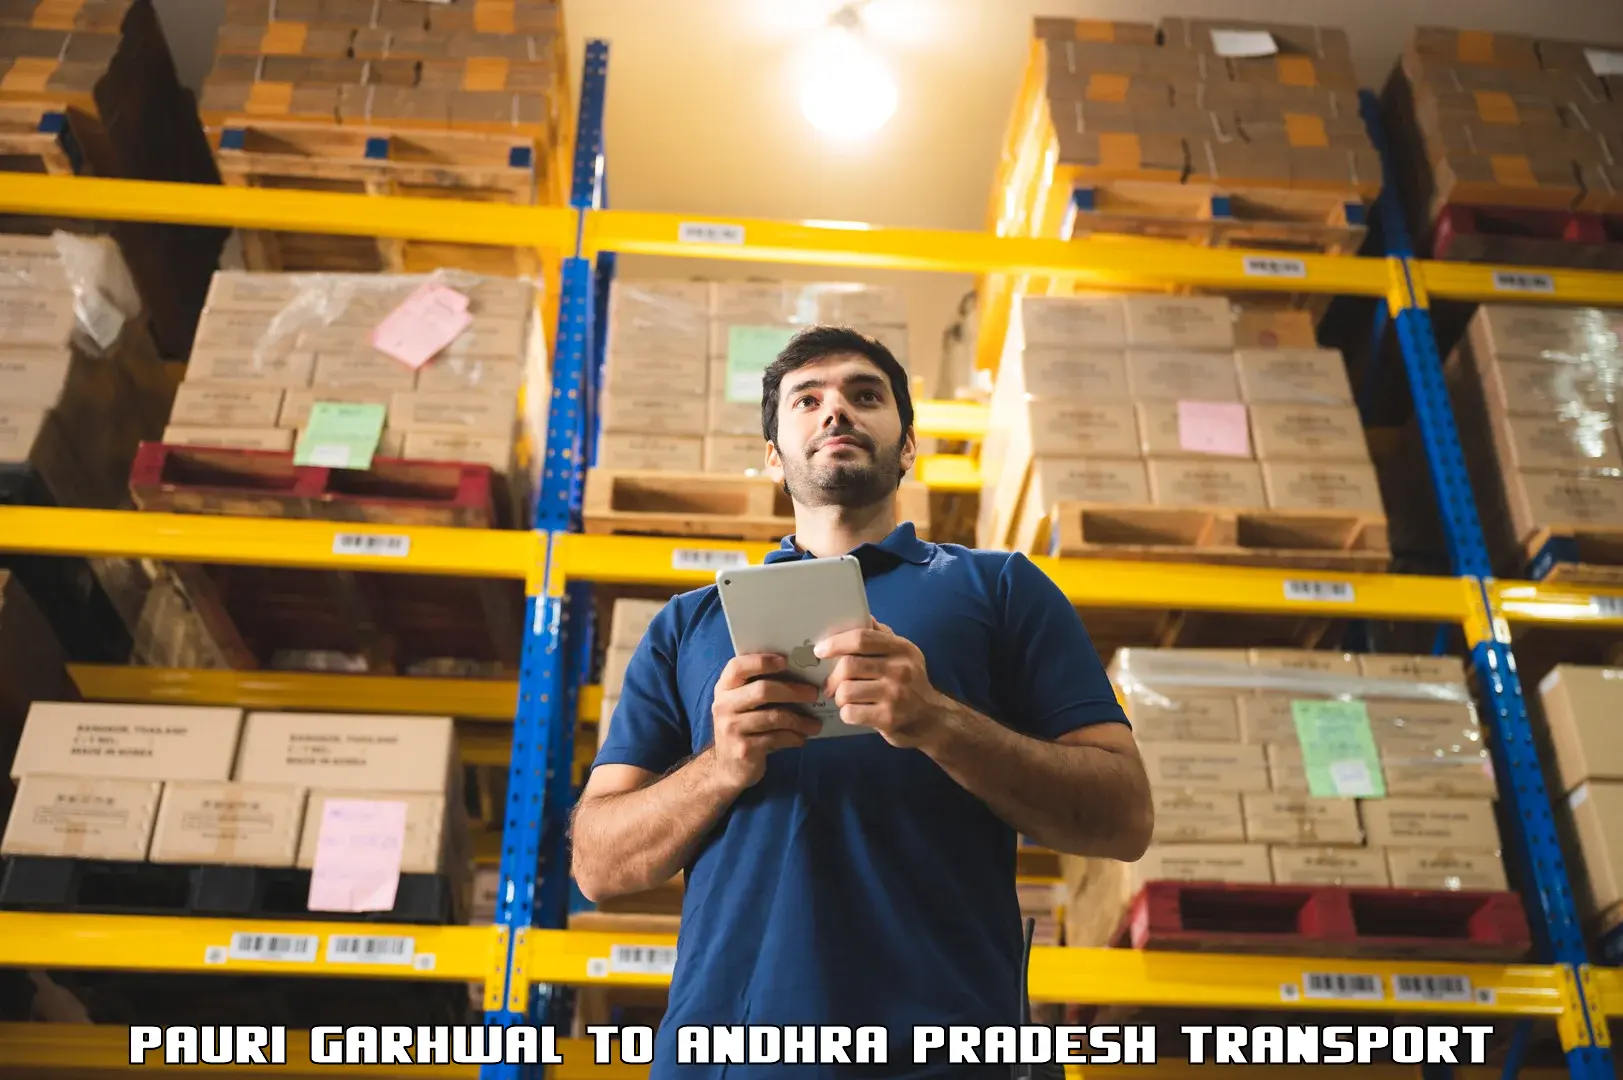 Shipping services Pauri Garhwal to Andhra Pradesh